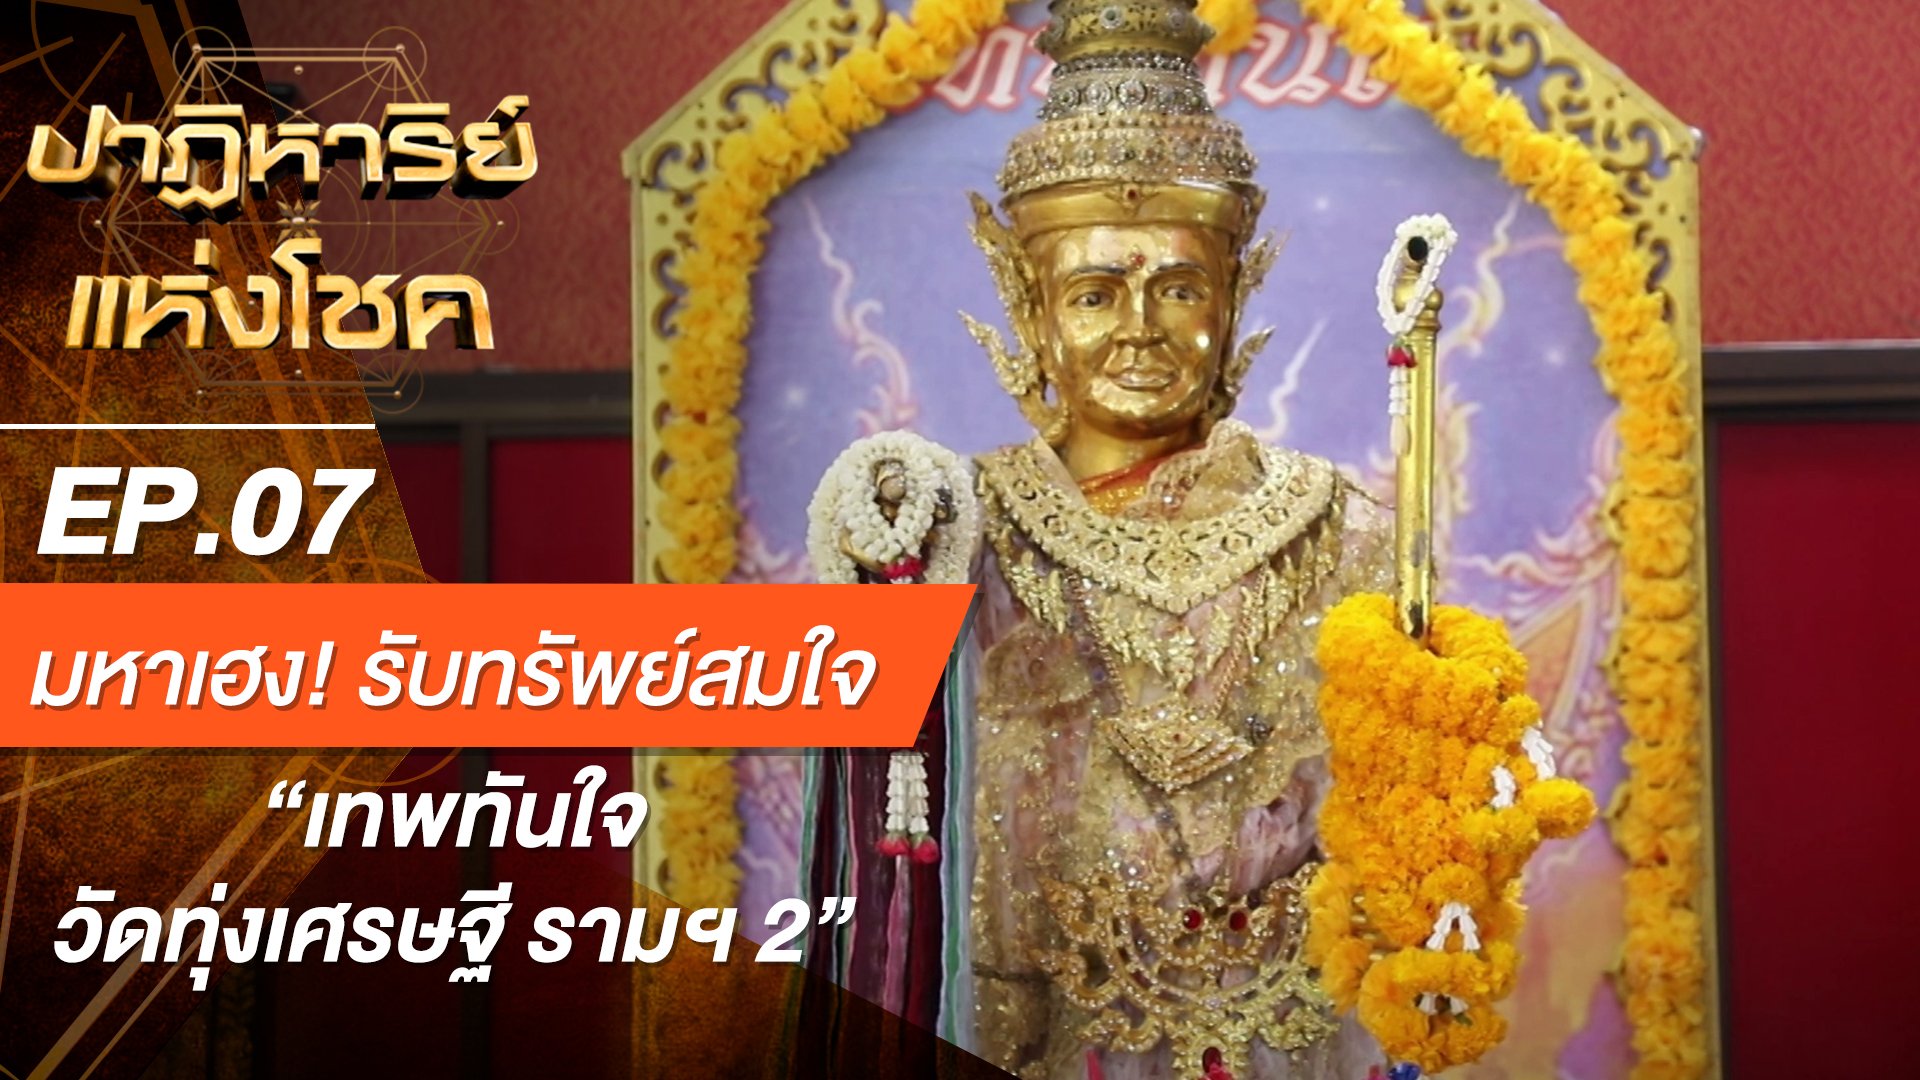 ปาฏิหาริย์แห่งโชค | EP.7 สิ่งศักดิ์สิทธิ์จากพม่า “เทพทันใจ (วัดทุ่งเศรษฐี รามฯ 2)” | 11 ก.ค. 63 | AMARIN TVHD34